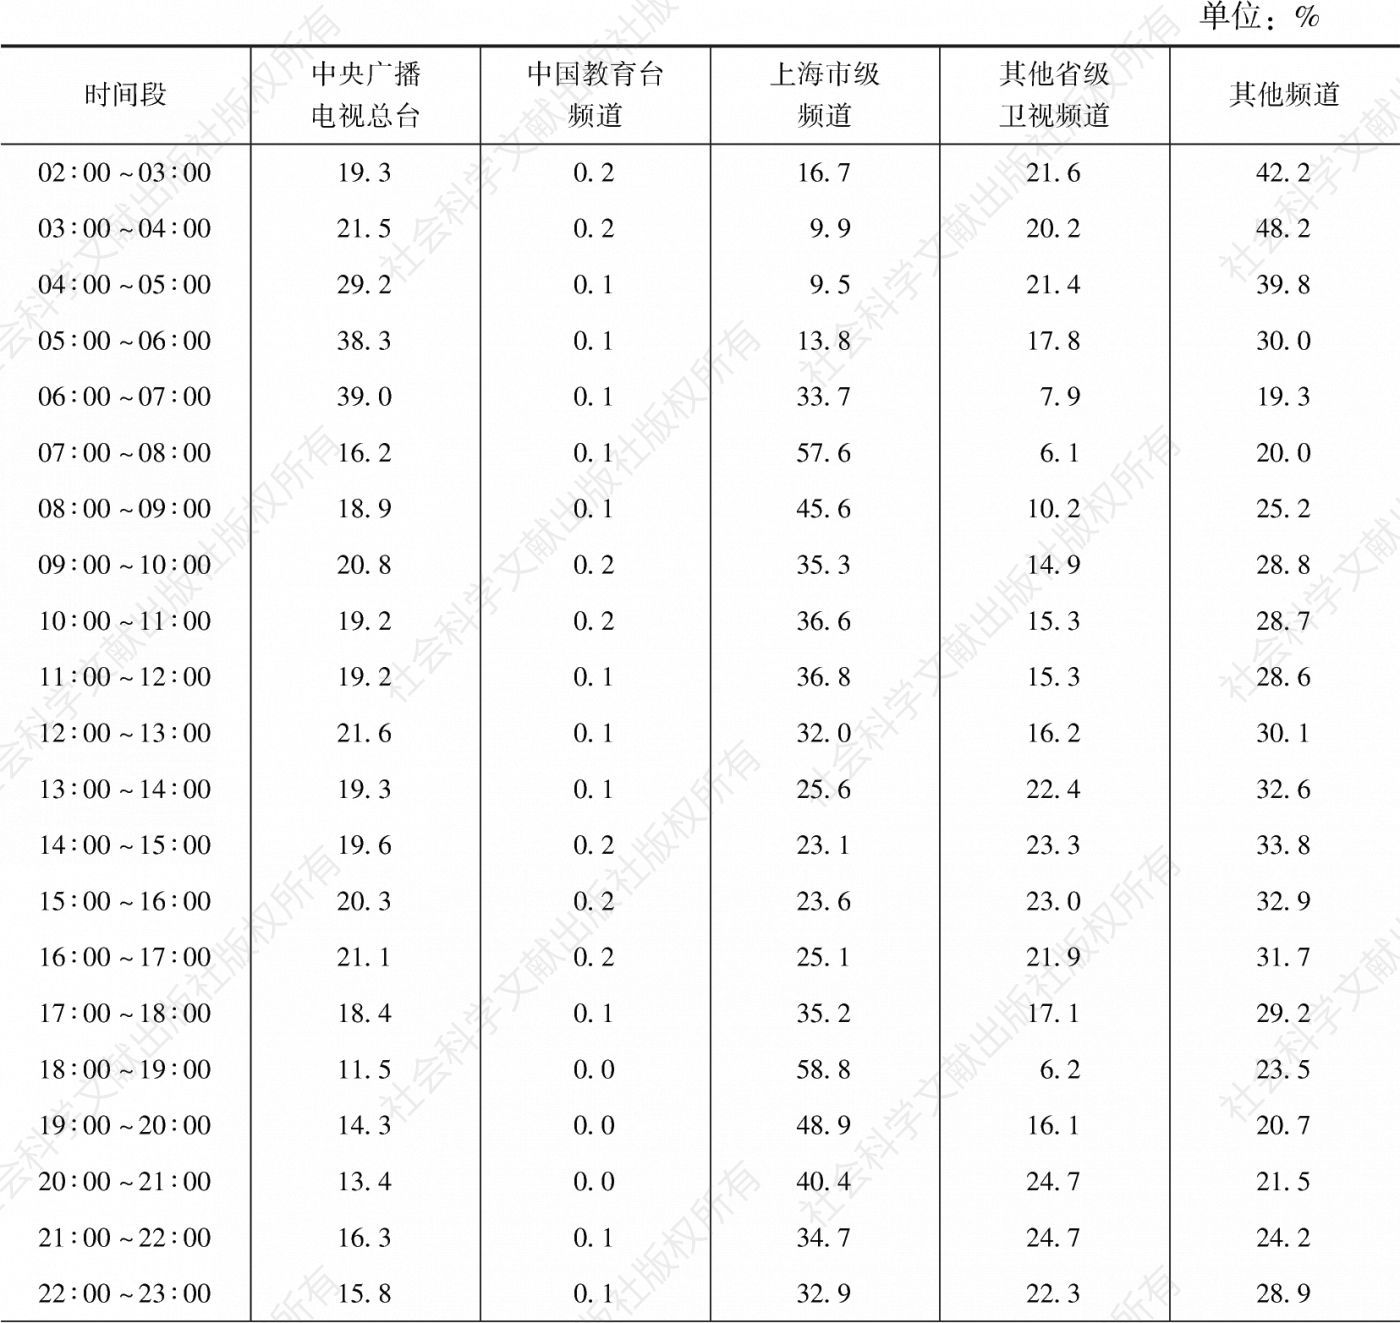 表3.28.3 2020年上海市场各类频道在不同时段的市场占有率